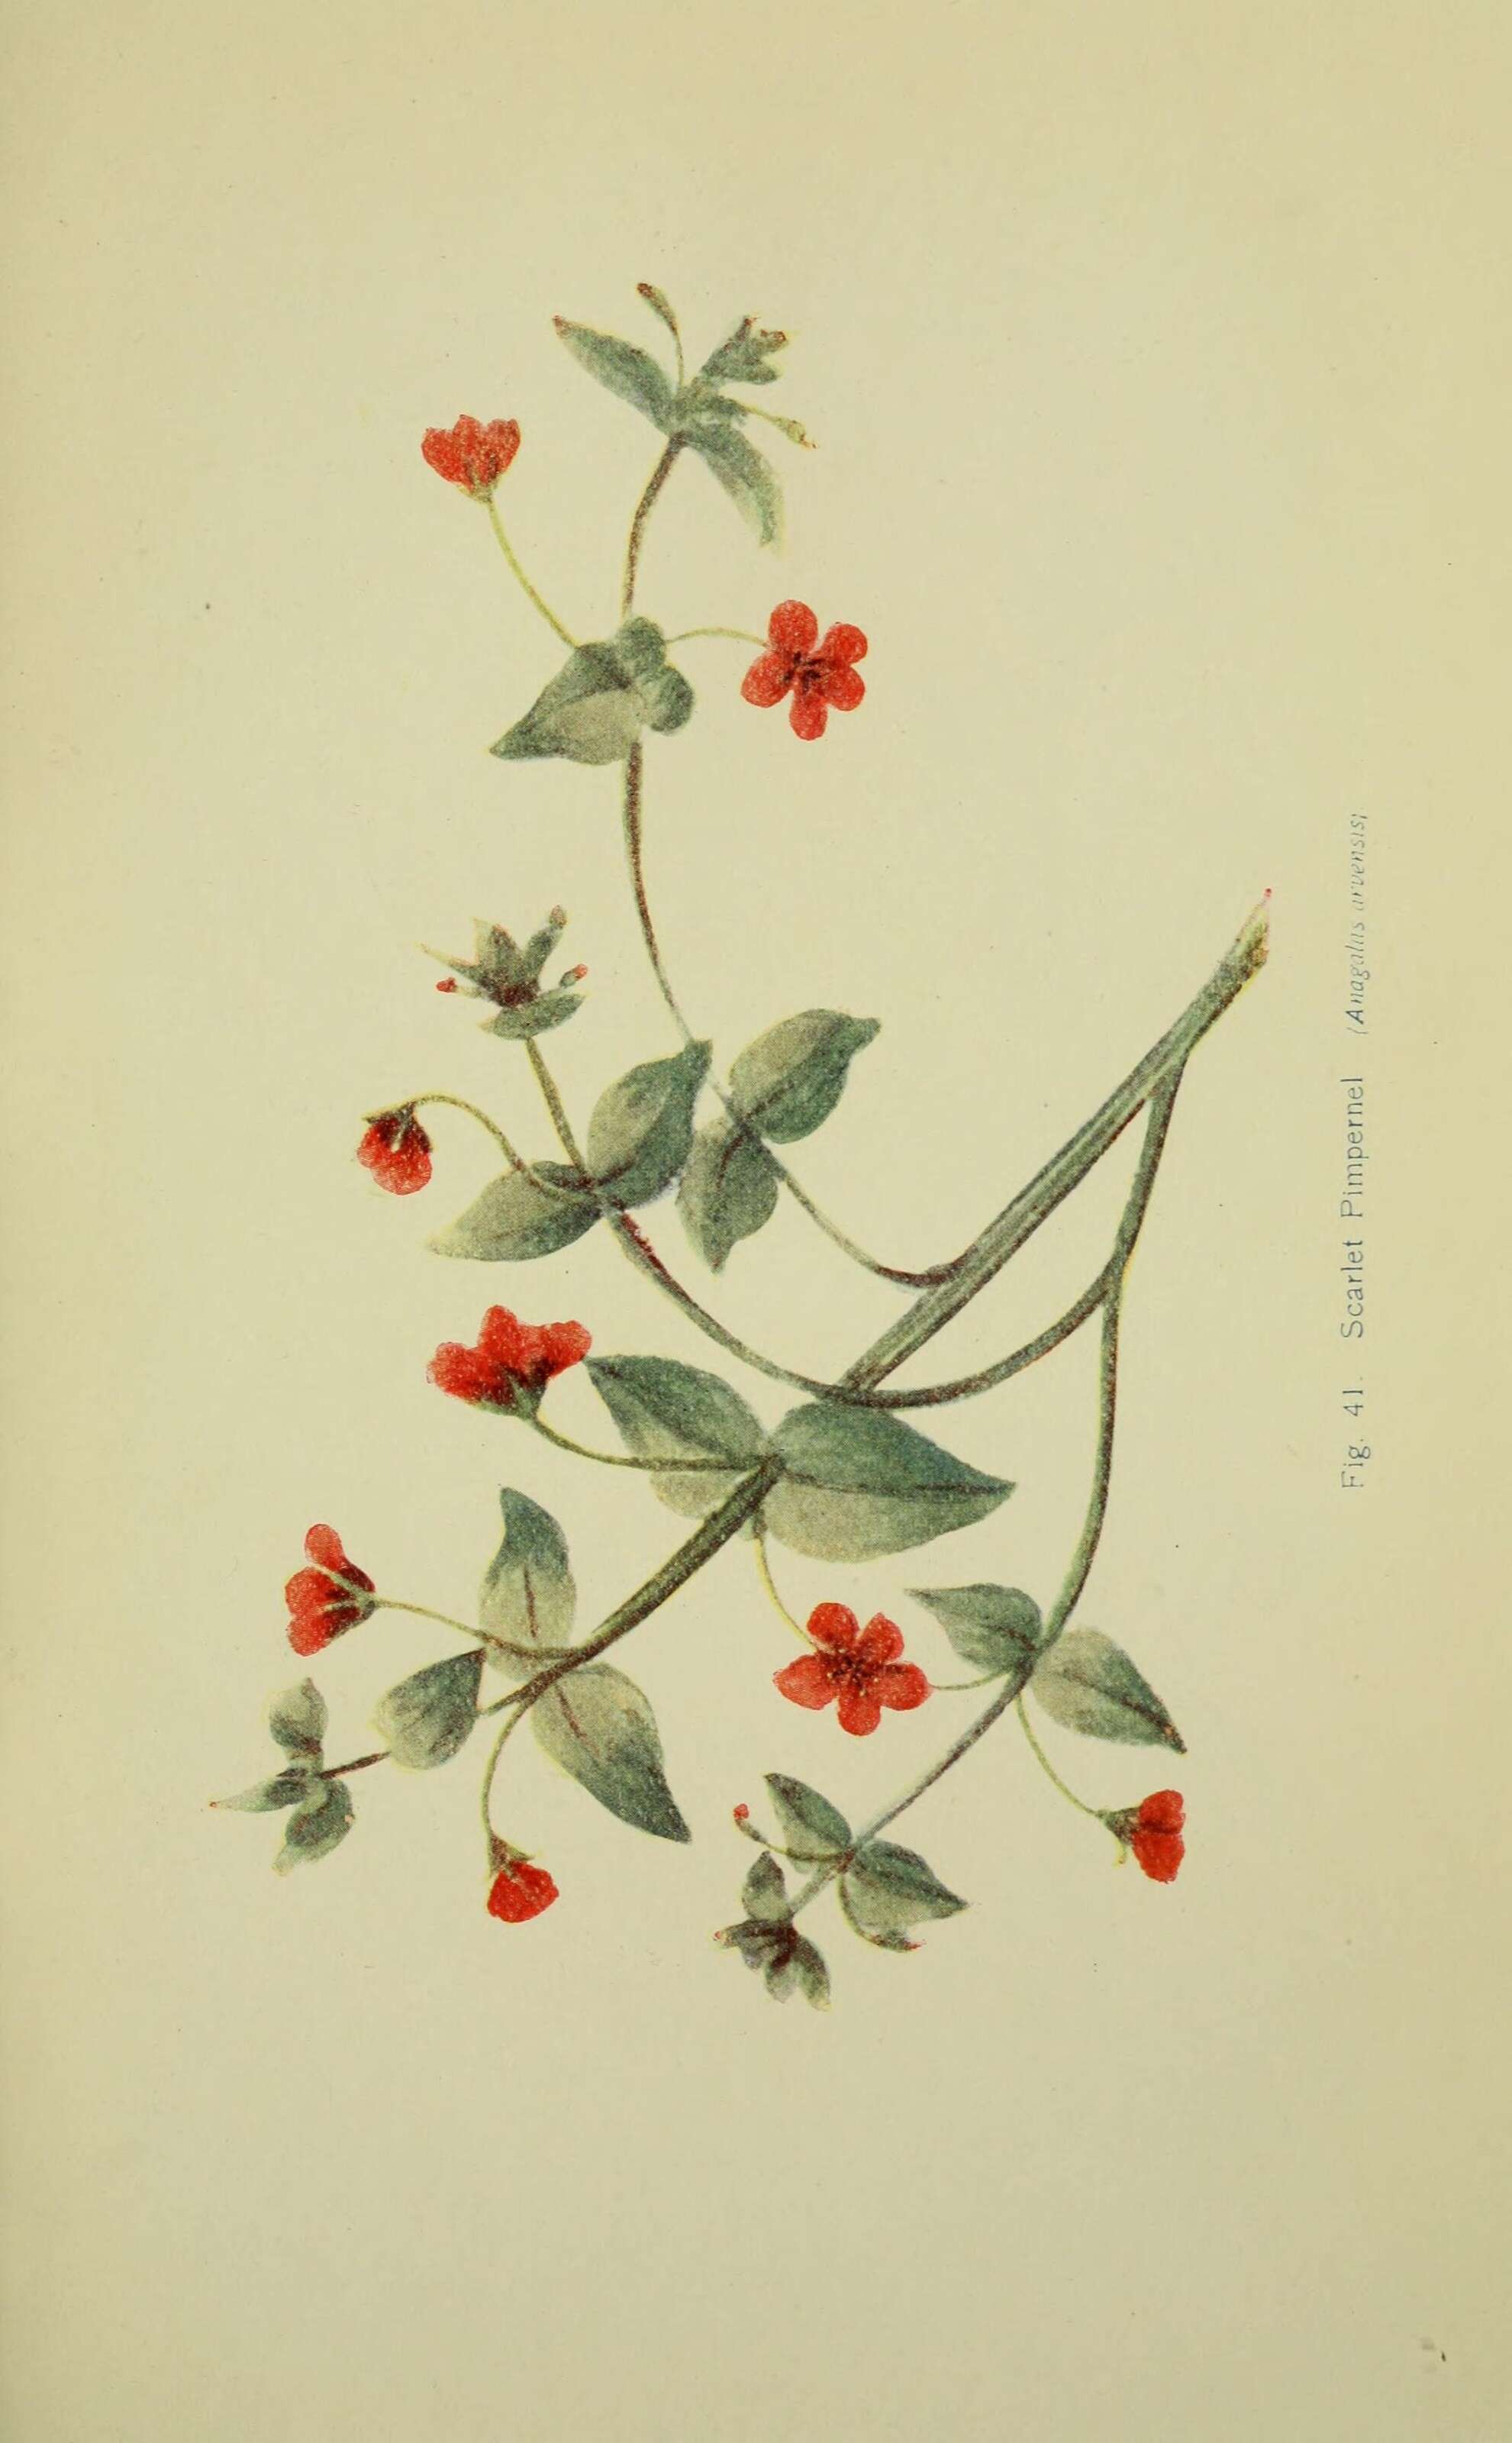 Image of Scarlet pimpernel